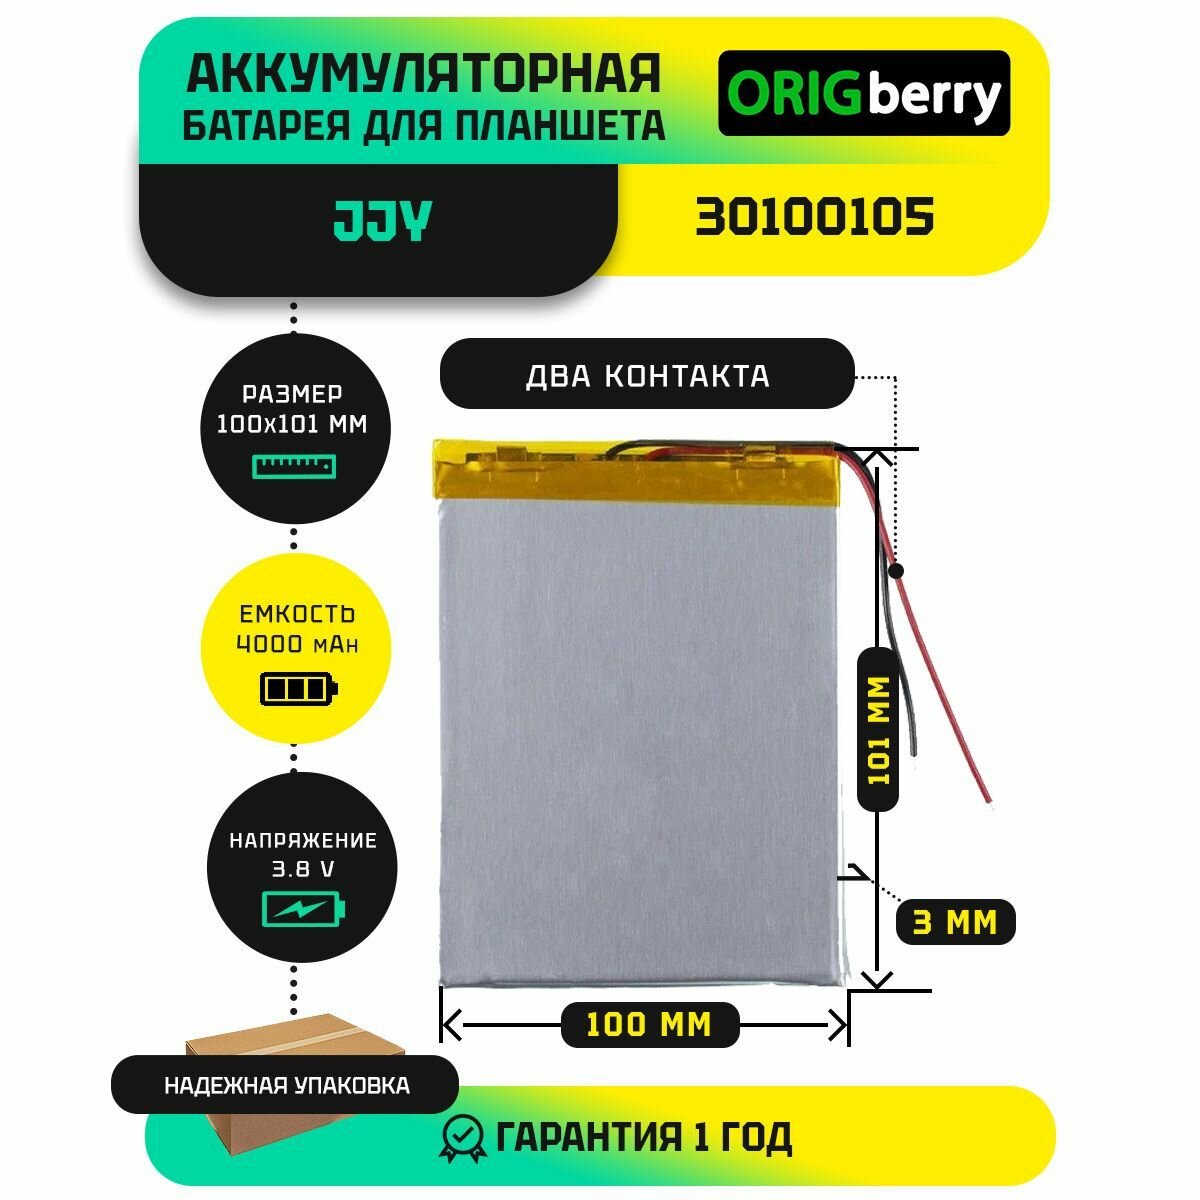 Аккумулятор для планшета JJY 30100105 3,8 V / 4000 mAh / 101мм x 100мм x 3мм / без коннектора